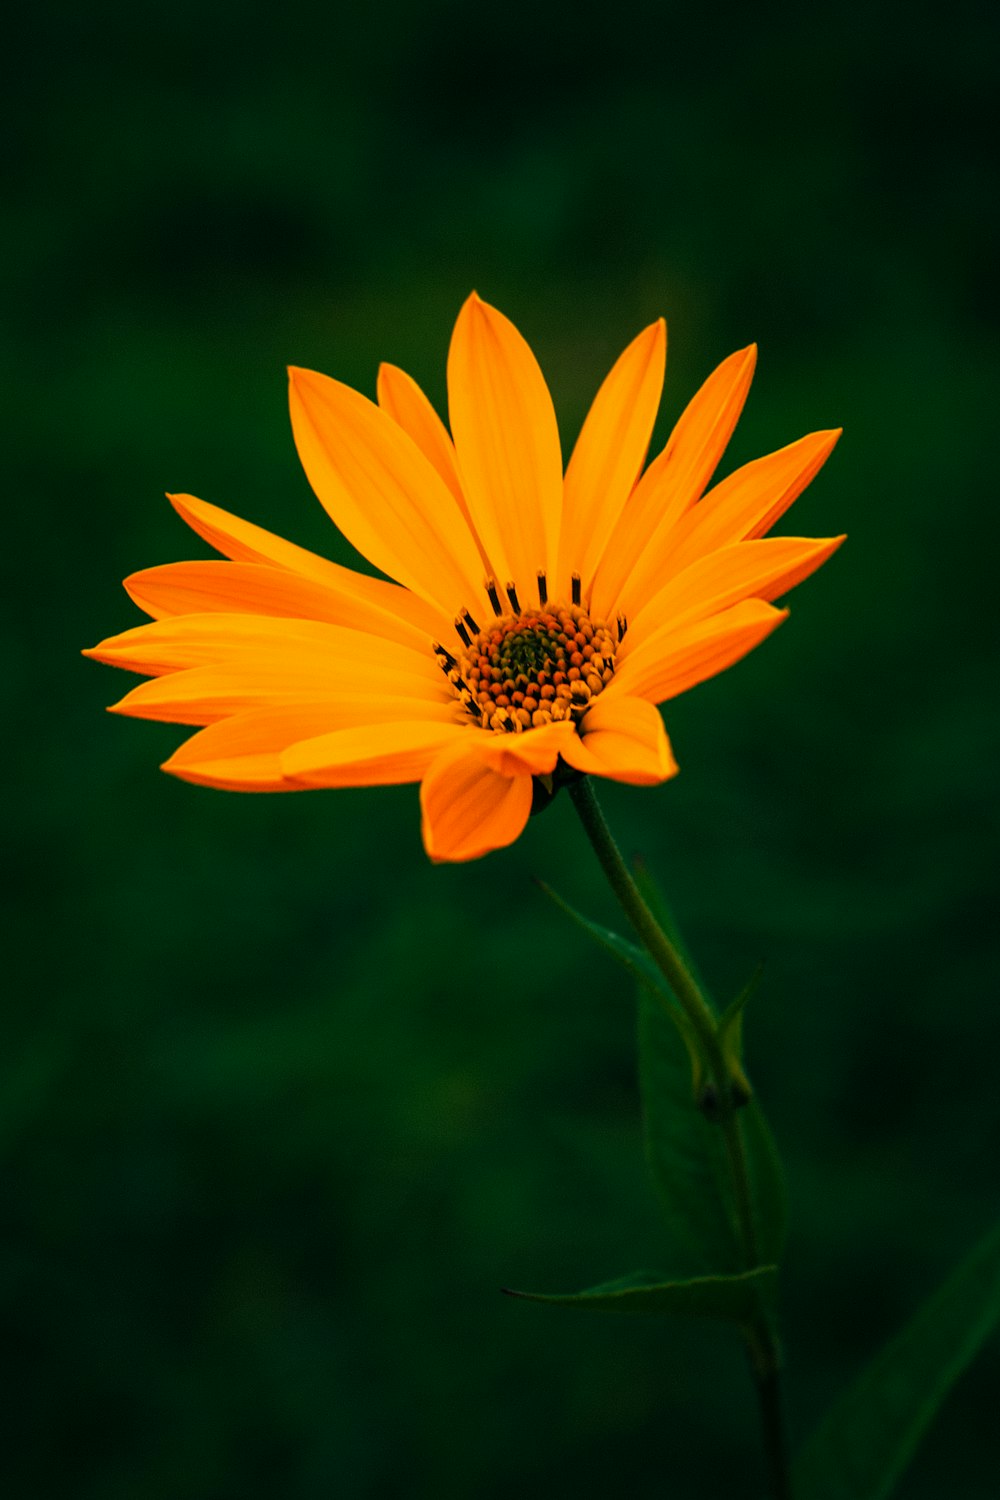 Hoa cam: Tựa như nụ cười rạng rỡ của một người phụ nữ, hoa cam cũng mang đến sự tươi vui và sức sống cho đời sống của chúng ta. Hãy cùng chiêm ngưỡng tuyệt tác thiên nhiên này, với màu cam rực rỡ, hoa cam sẽ khiến bạn cảm thấy sảng khoái và yêu đời hơn.